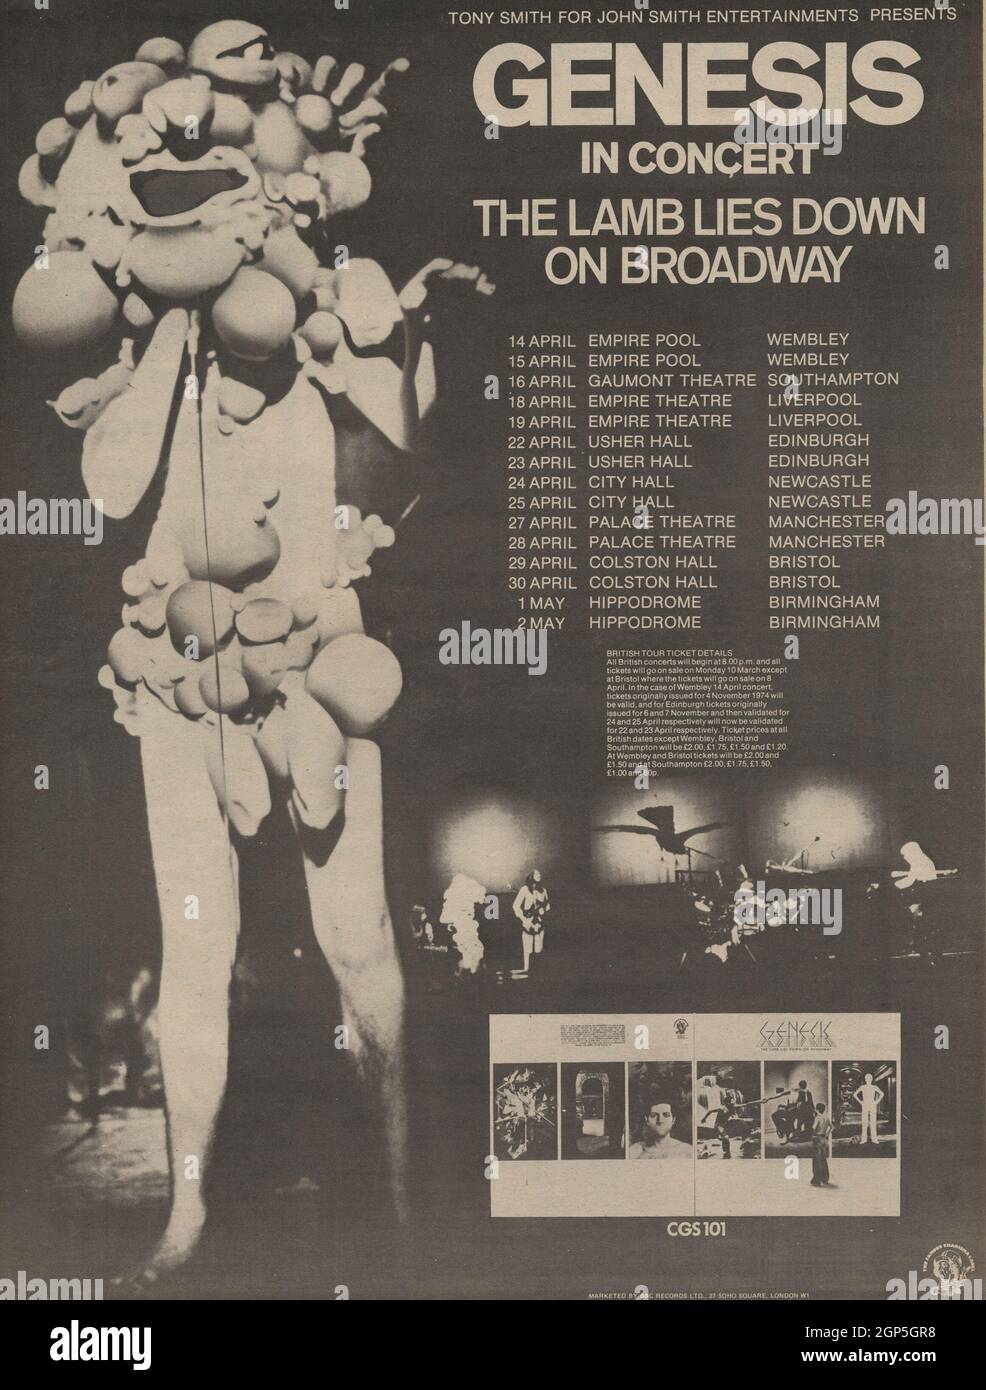 Genesis, The Lamb Lies Down on Broadway, ganzseitige Werbung für die britische Konzerttournee, Peter Gabriels letzte Shows mit der Gruppe. Bild von Gabriel in seinem Gummikostüm. Stockfoto